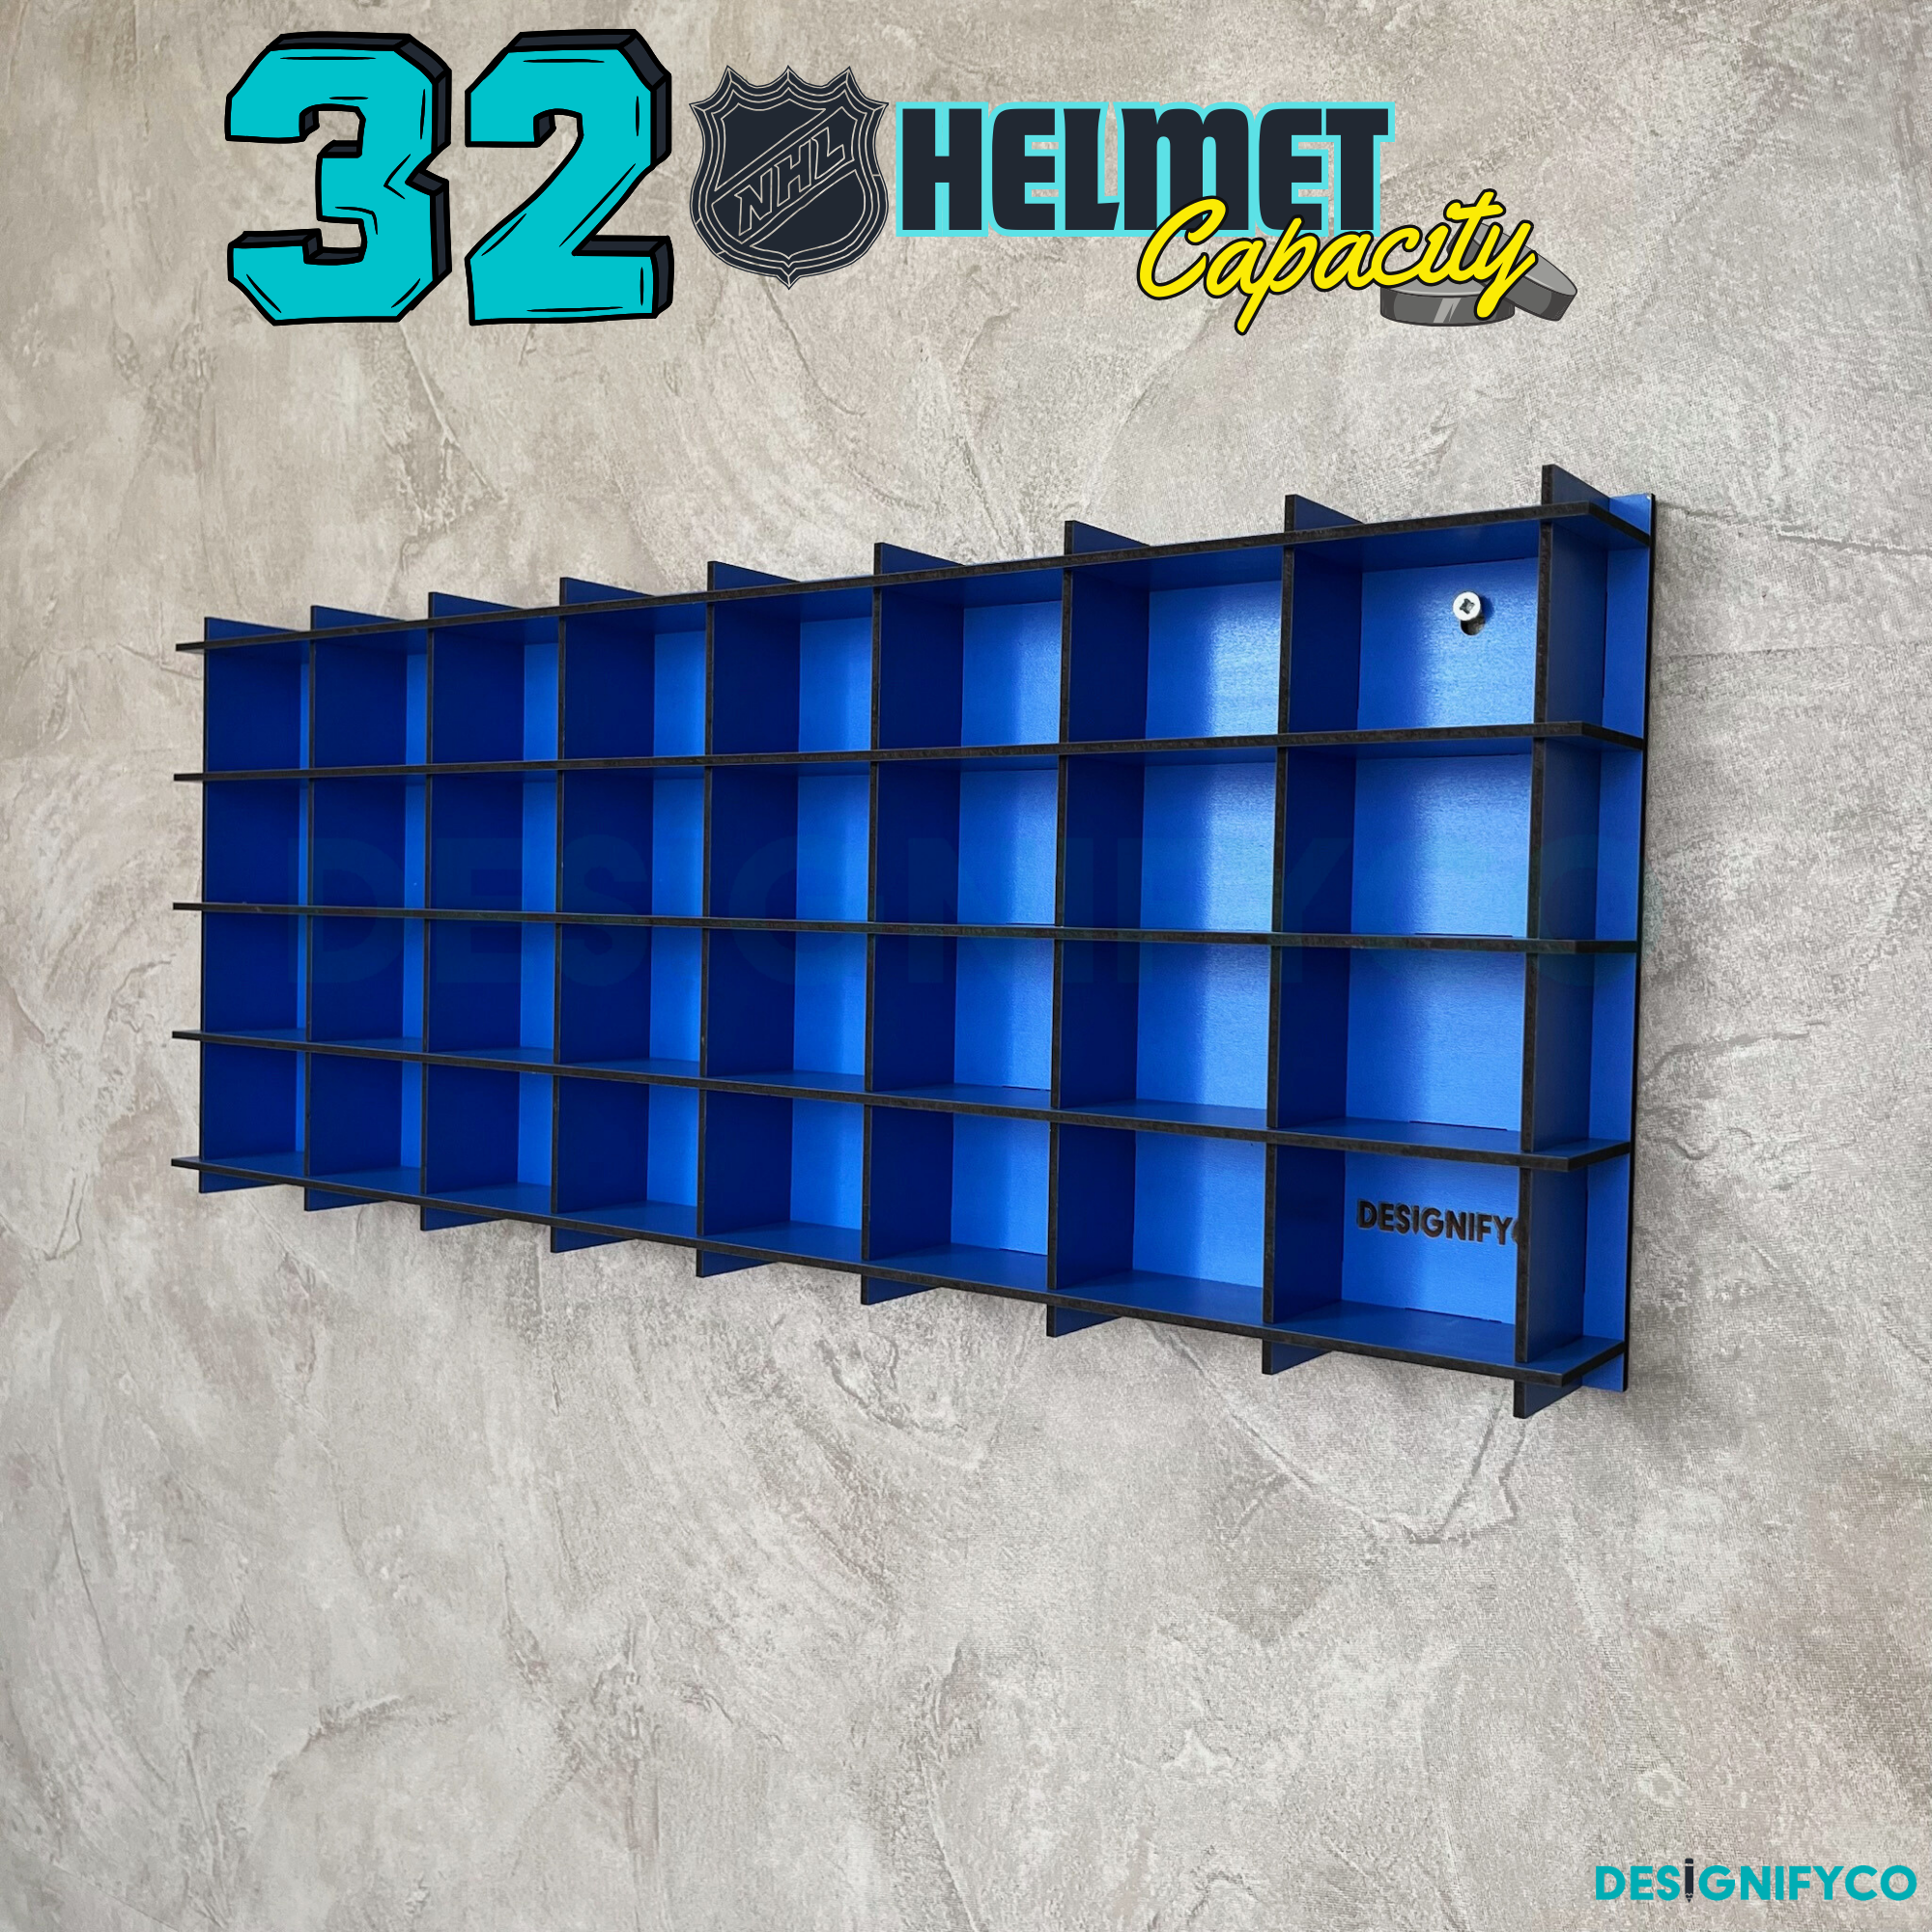 BLUE NHL Mini Helmet 32 Display Case